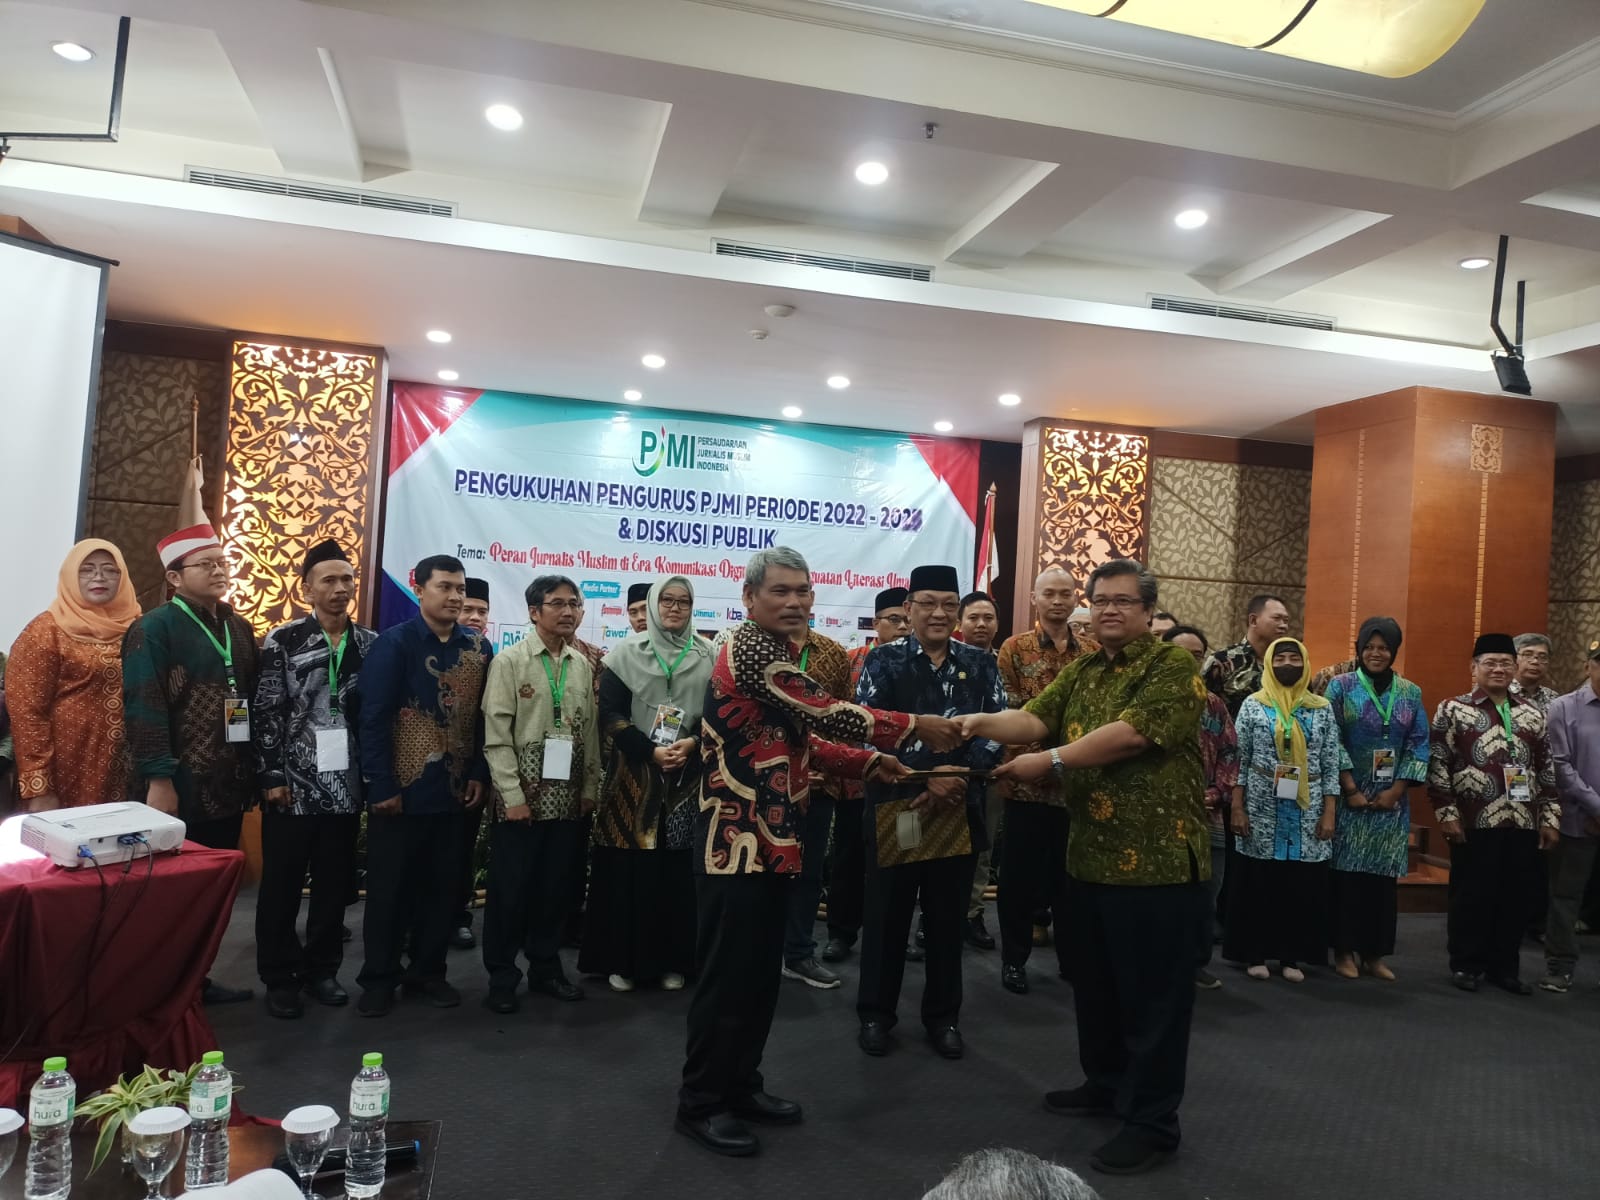 Pengukuhan pengurus PJMI 2022-2025 di Hotel Balairung Jakarta, Jumat (17/2/2023) [foto: istimewa]